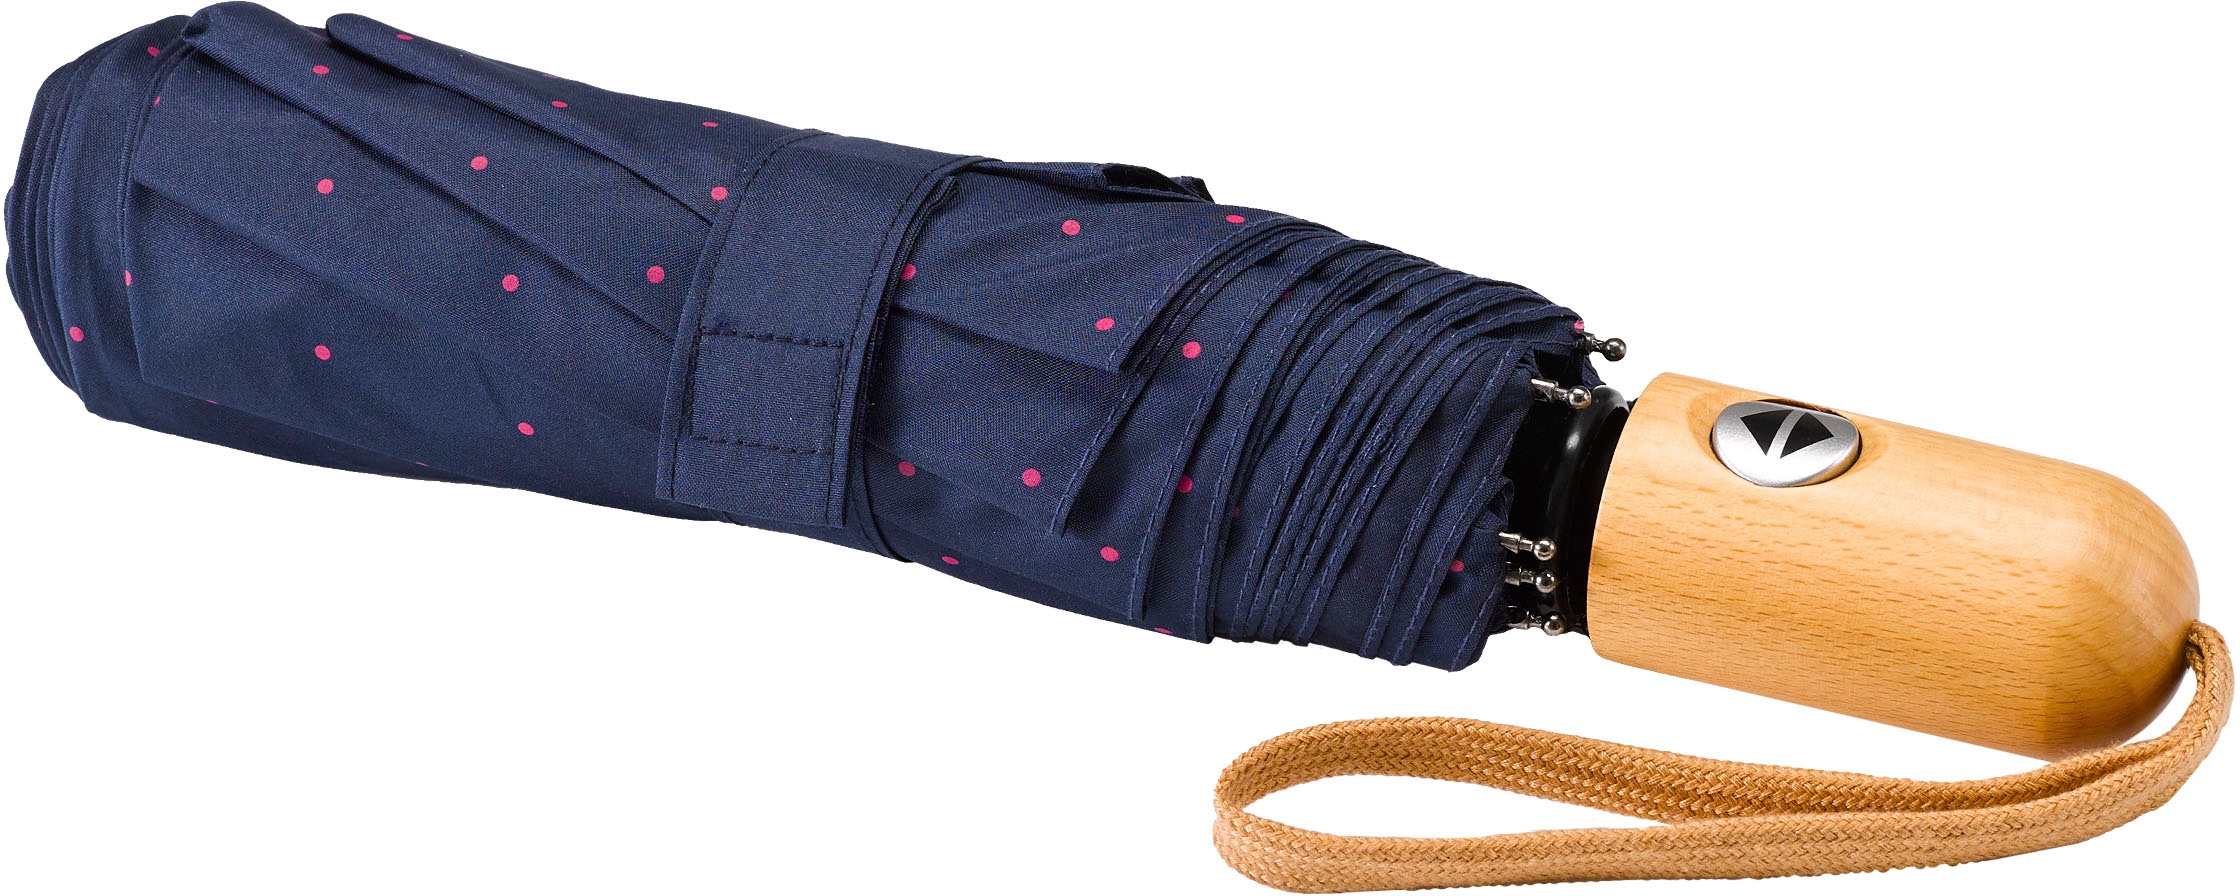 | »Umwelt-Taschenschirm, EuroSCHIRM® Punkte kaufen BAUR online marine, pink« Taschenregenschirm